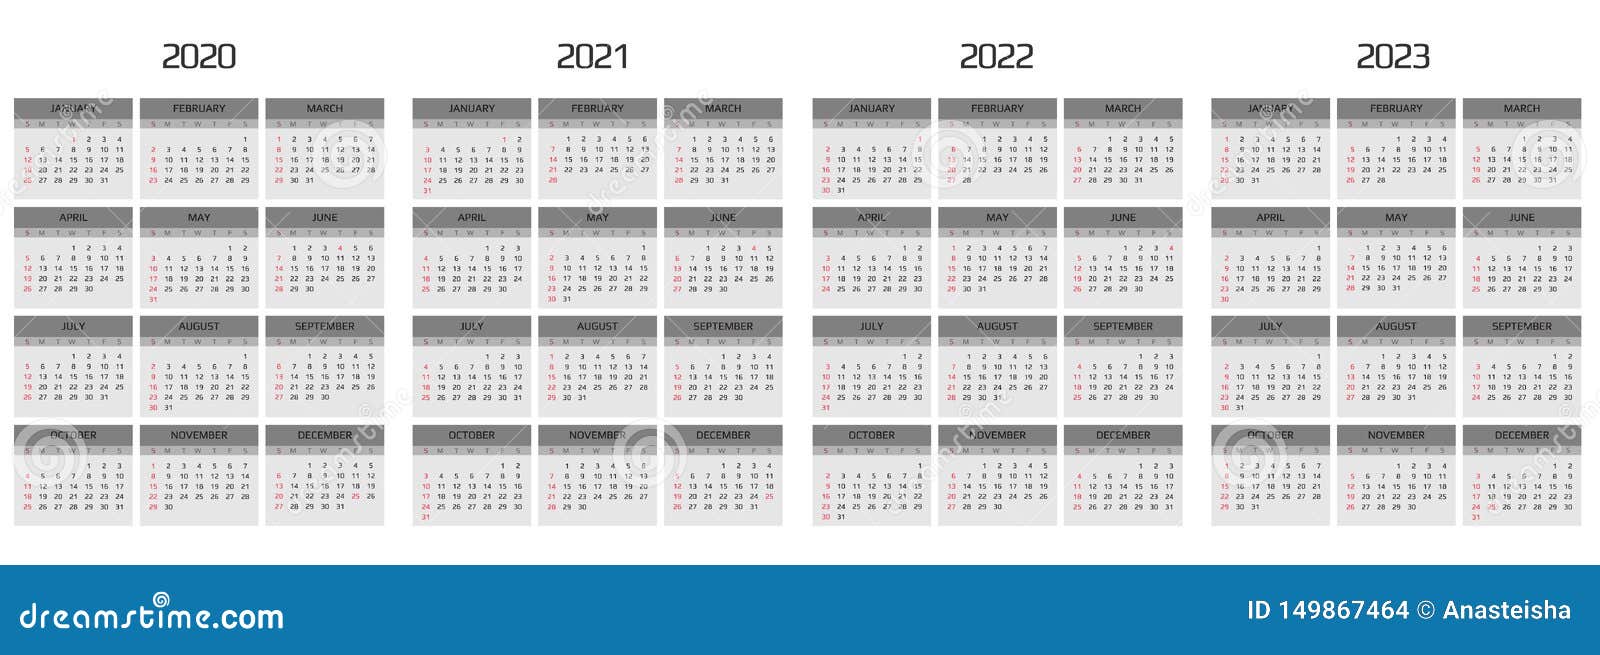 Сколько недель в го. Календарь 2020 2021 2022. Календарь 2021 2022 2023. Календарь 2020-2022. Календарь 2020-2023.